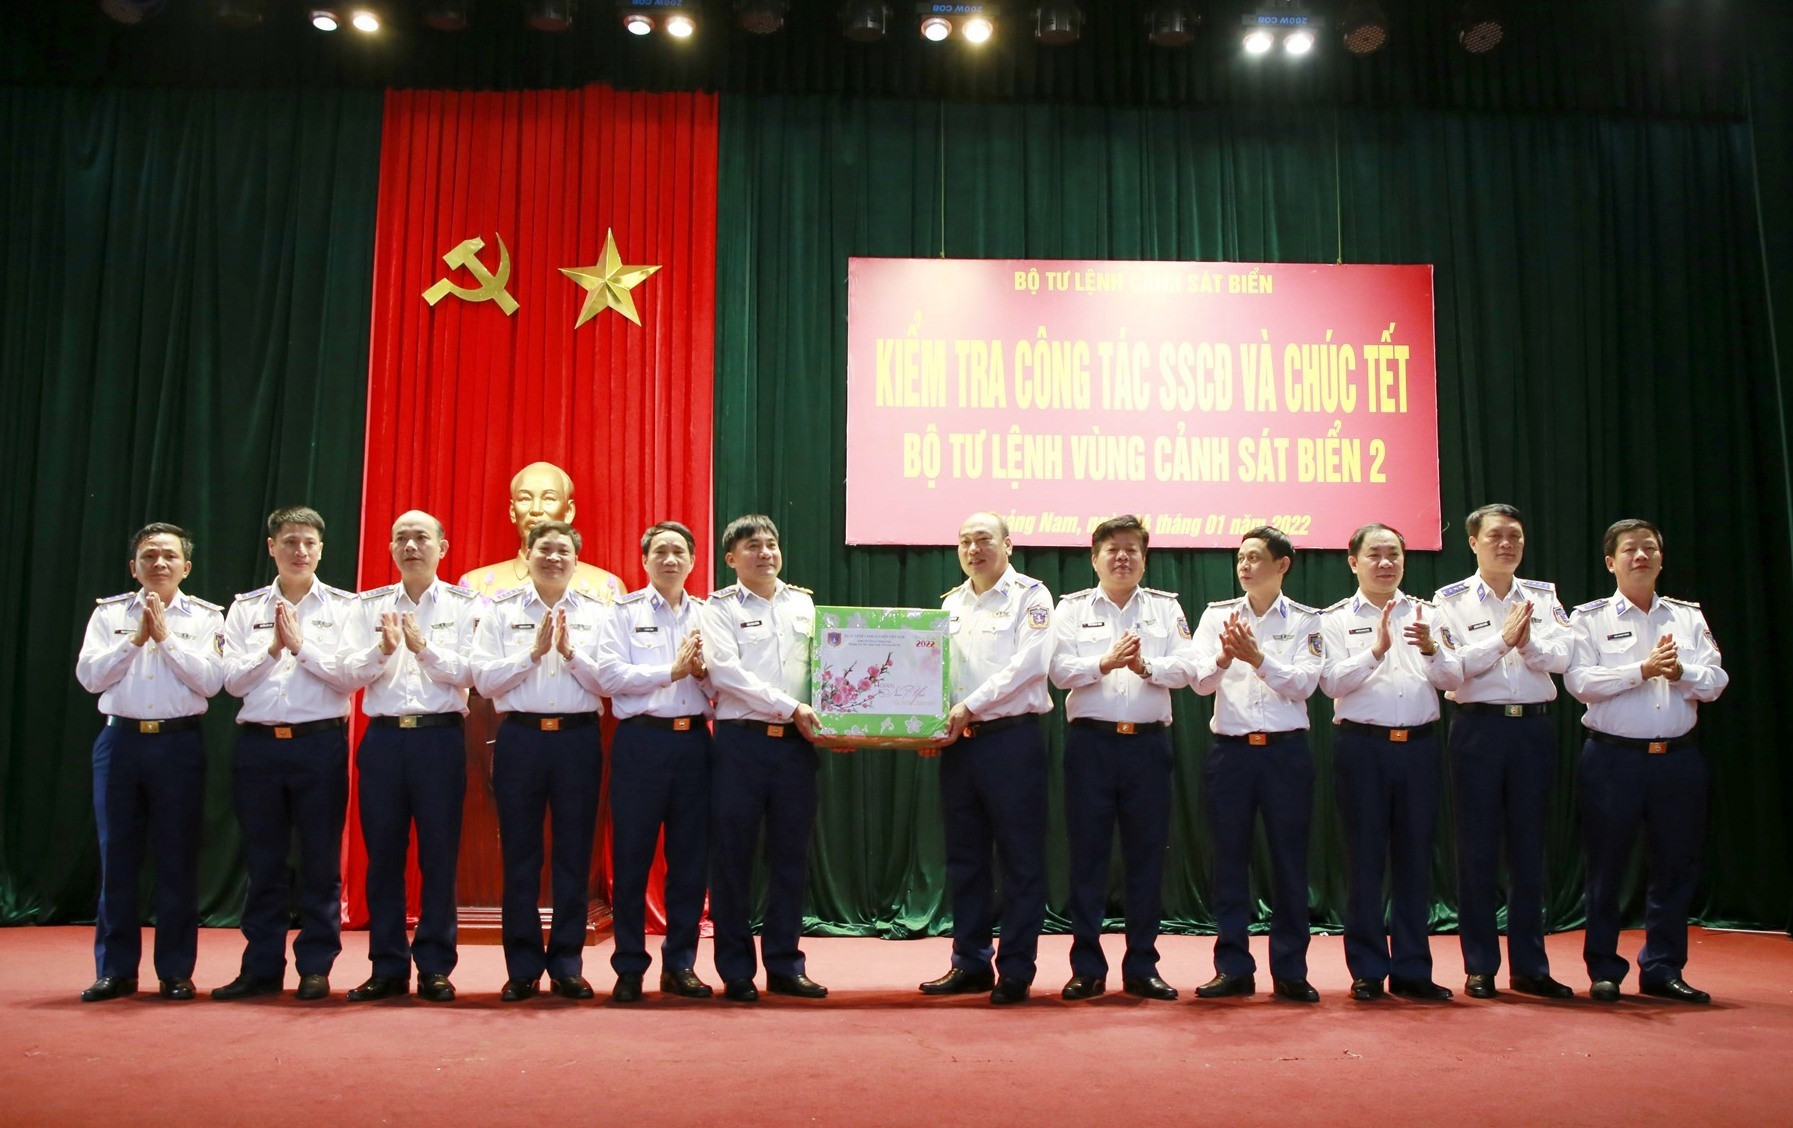 Đoàn công tác của Cánh sát biển Việt Nam tặng quà cho Bộ Tư lệnh Vùng Cảnh sát biển 2. Ảnh: T.C